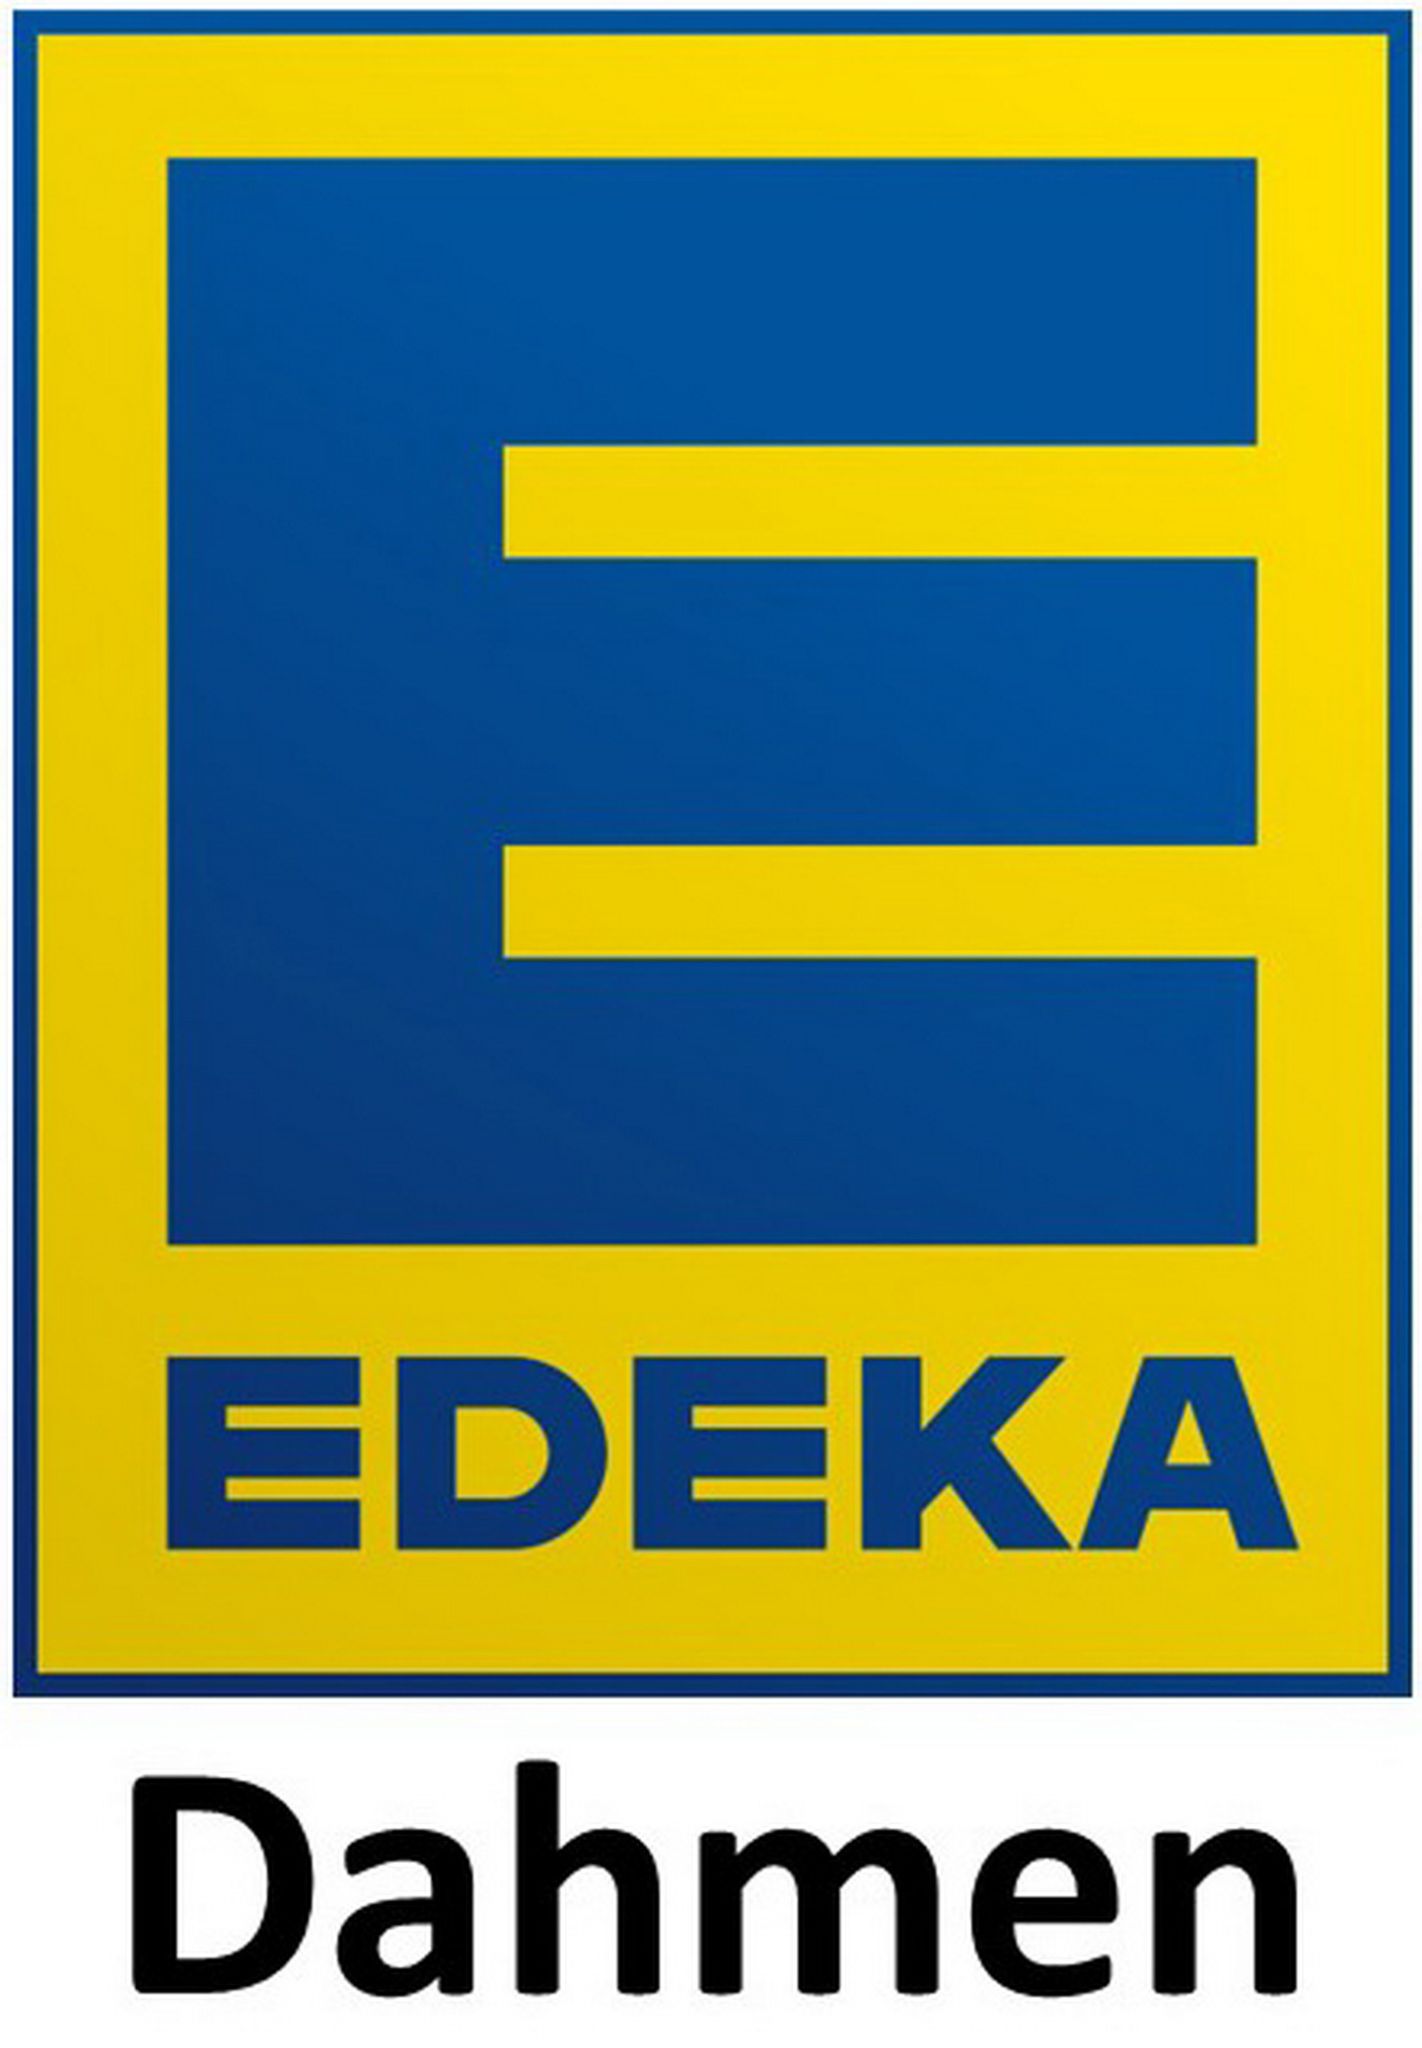 Edeka Dahmen